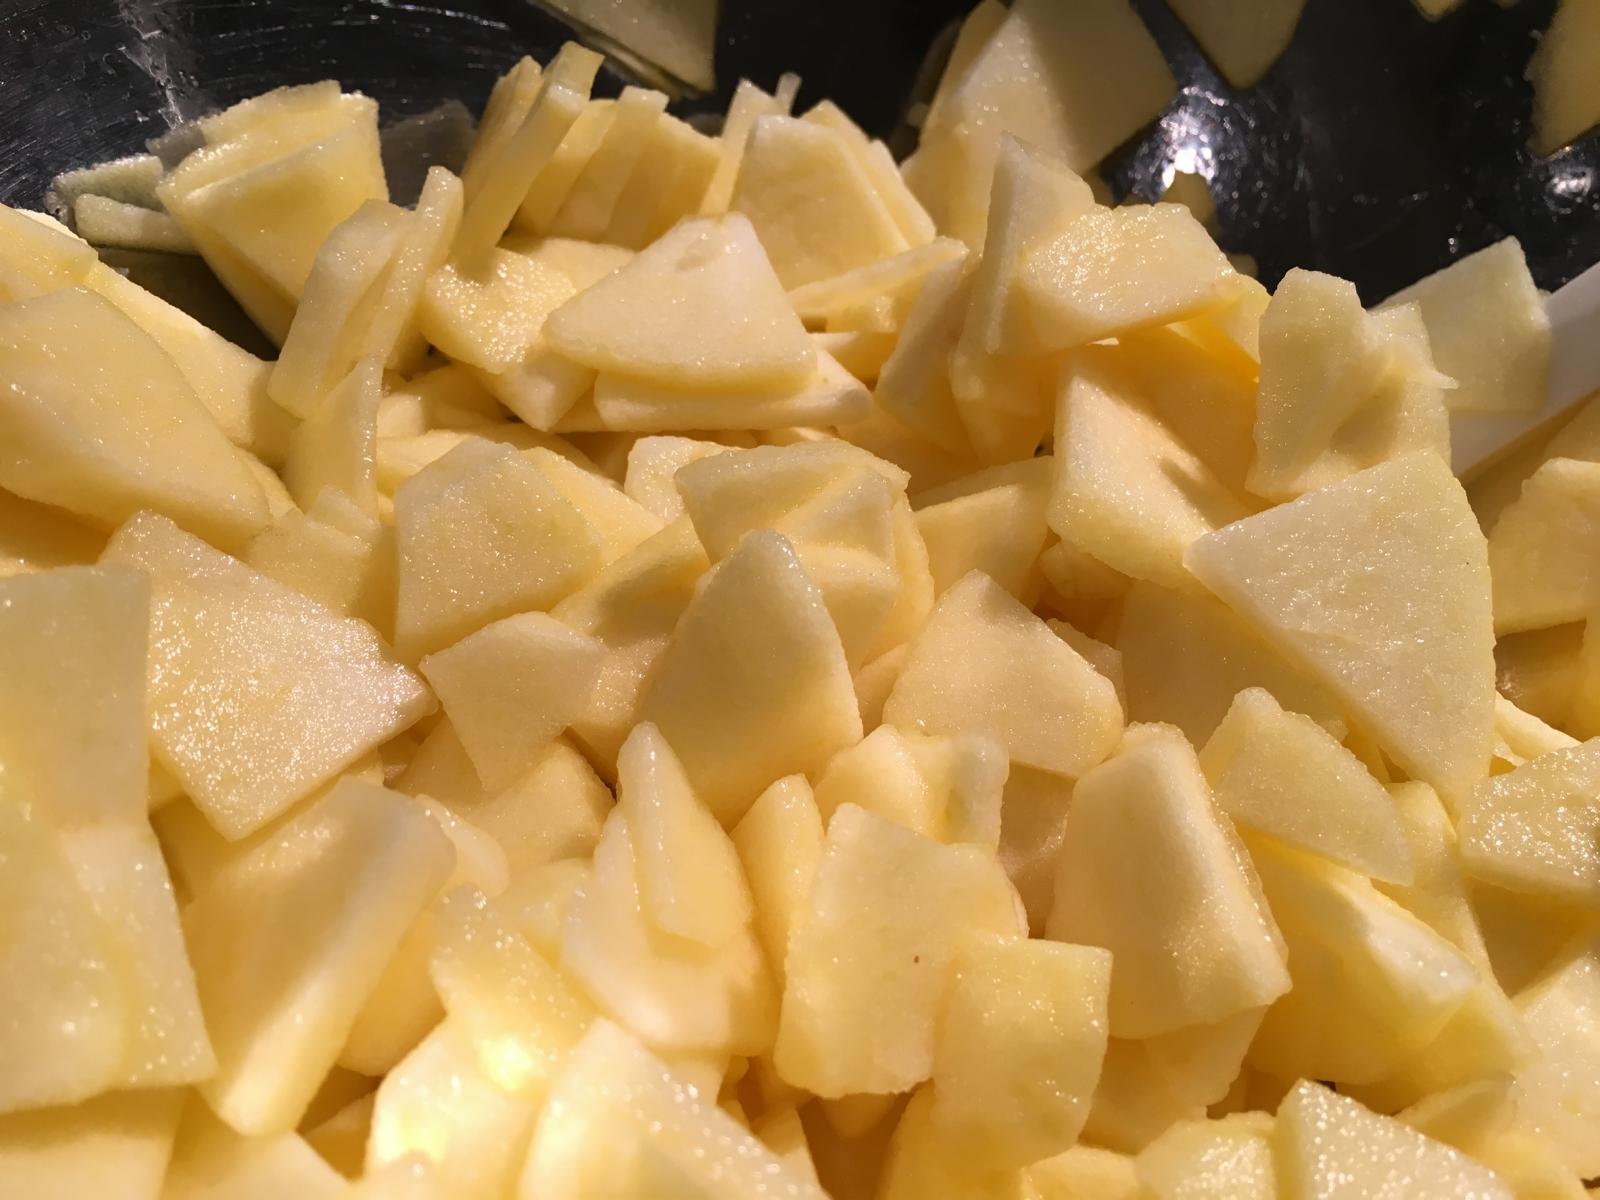 Apfelspalten mit Zitronensaft - damit die Spalten nicht so schnell braun werden